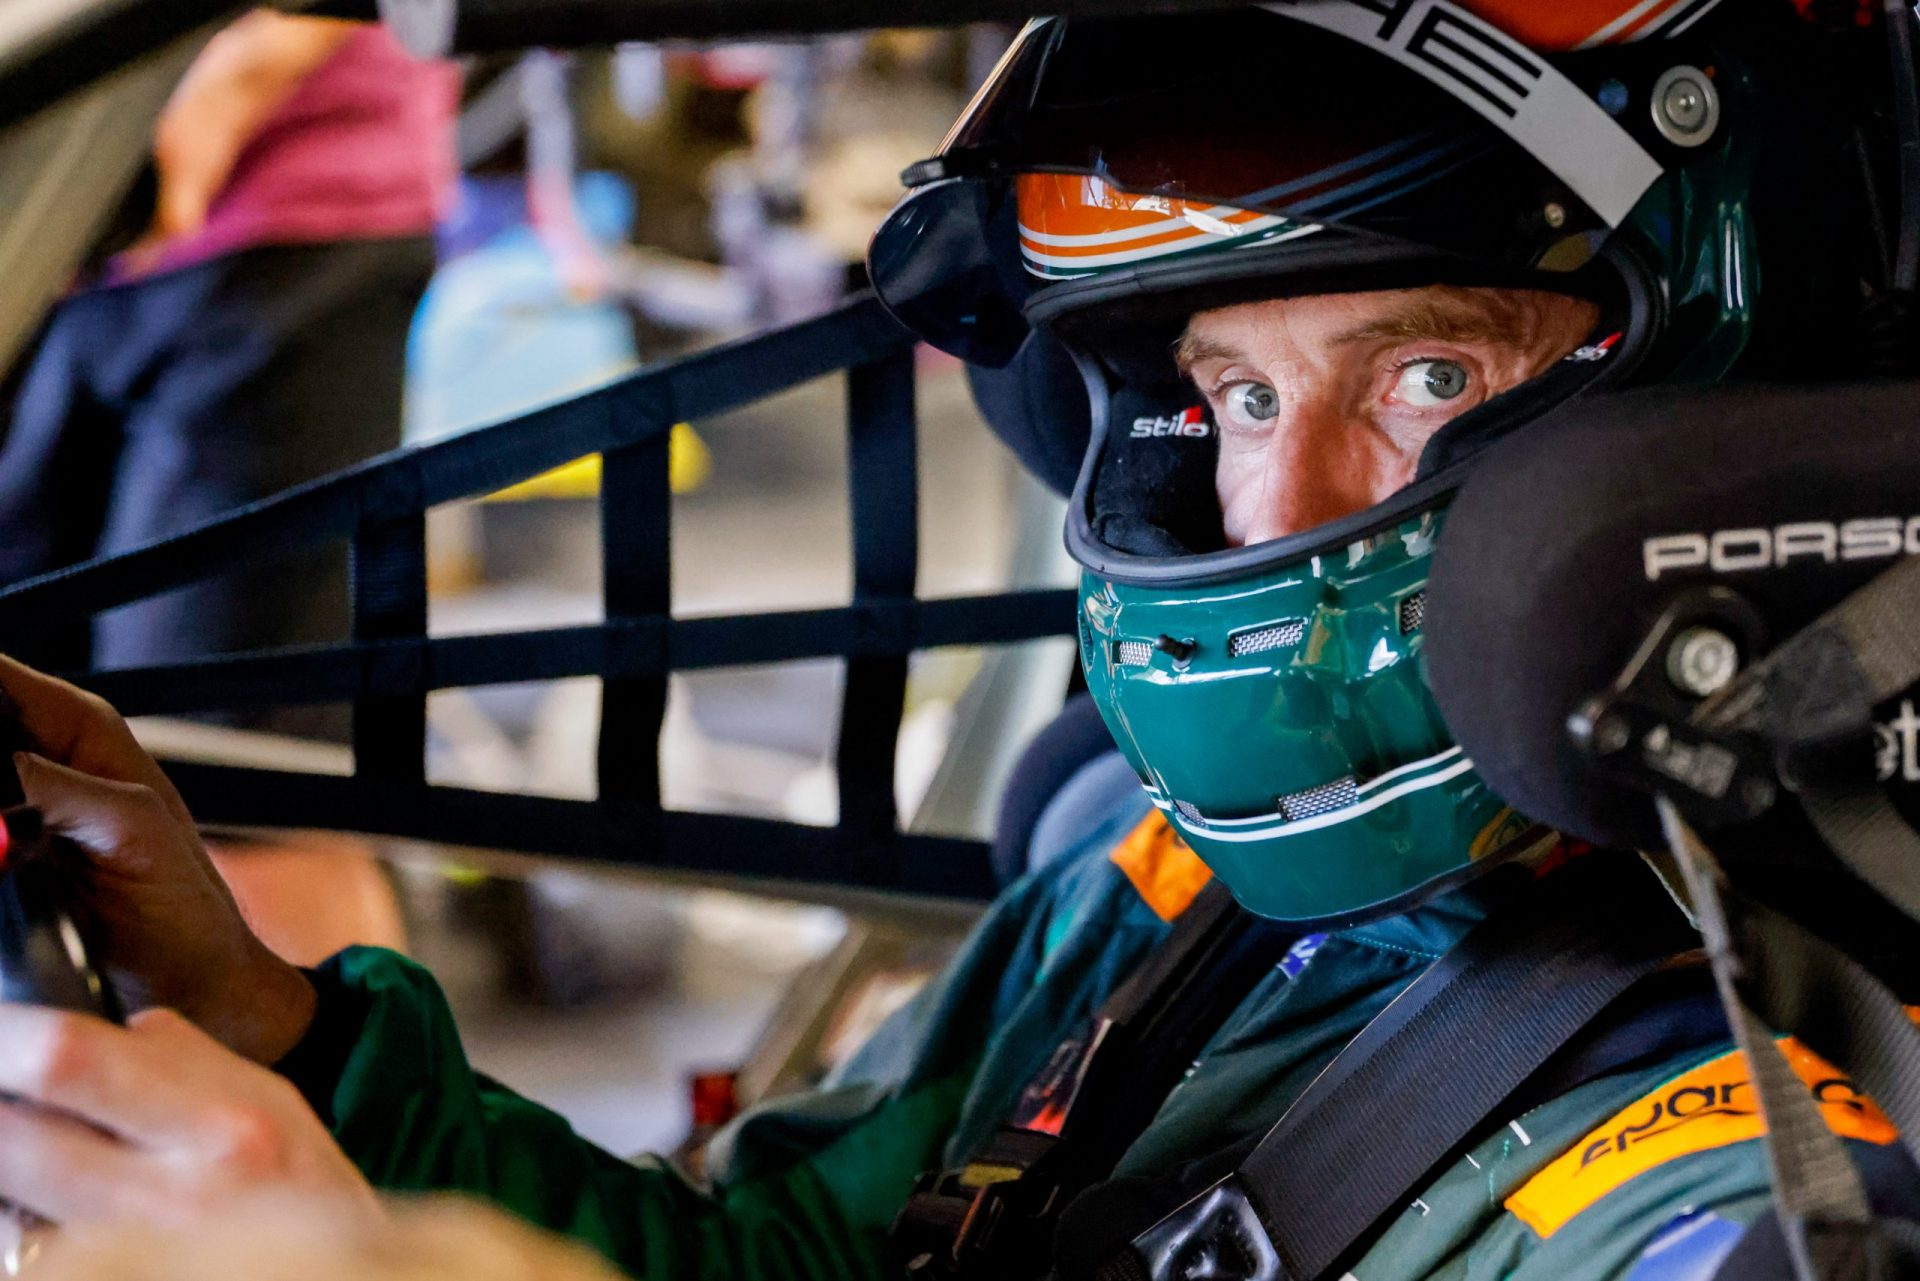 Michael Fassbender wystartuje w 24-godzinnym wyścigu Le Mans, fot. materiały prasowe / Porsche